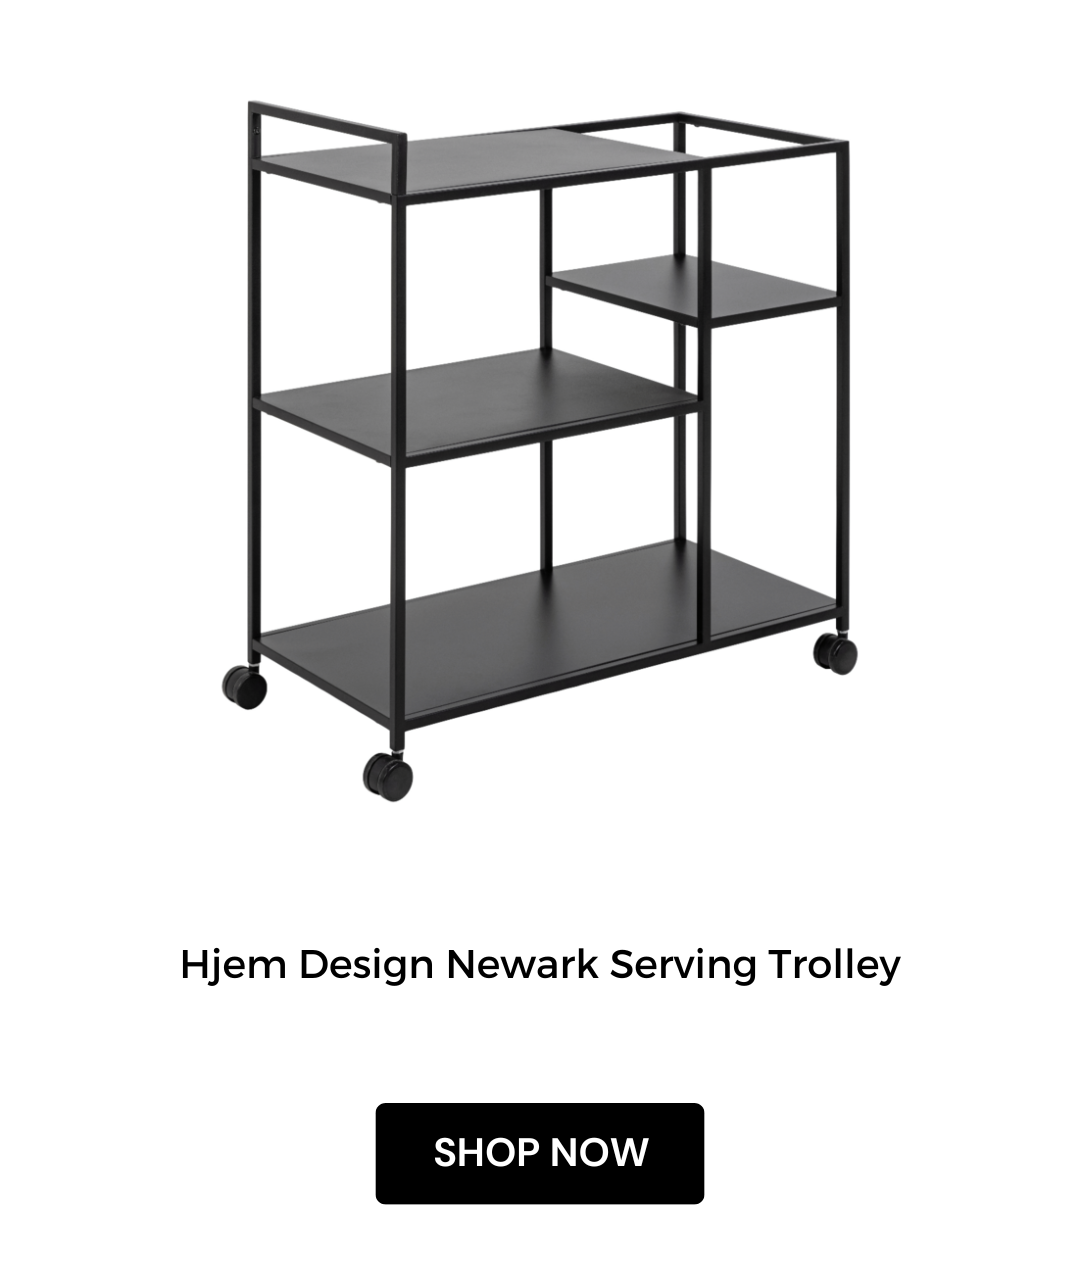 Hjem Design Newark Serving Trolley